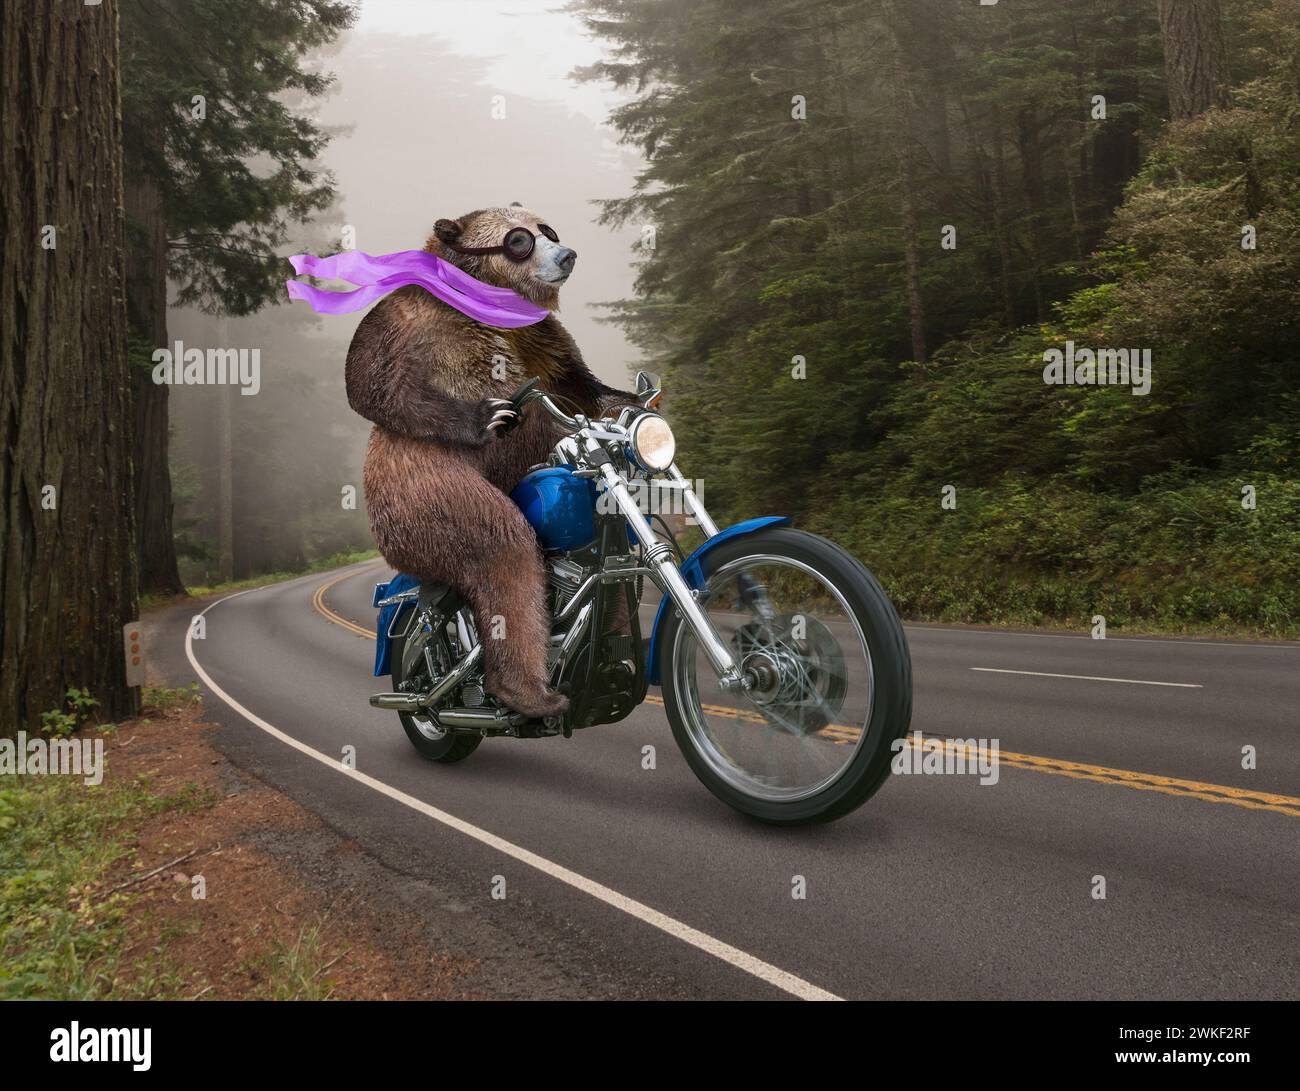 Un ours, portant une écharpe, conduit une moto à travers une forêt dans une drôle d'image animale sur la liberté, les voyages, la voie à suivre, et l'inattendu. Banque D'Images